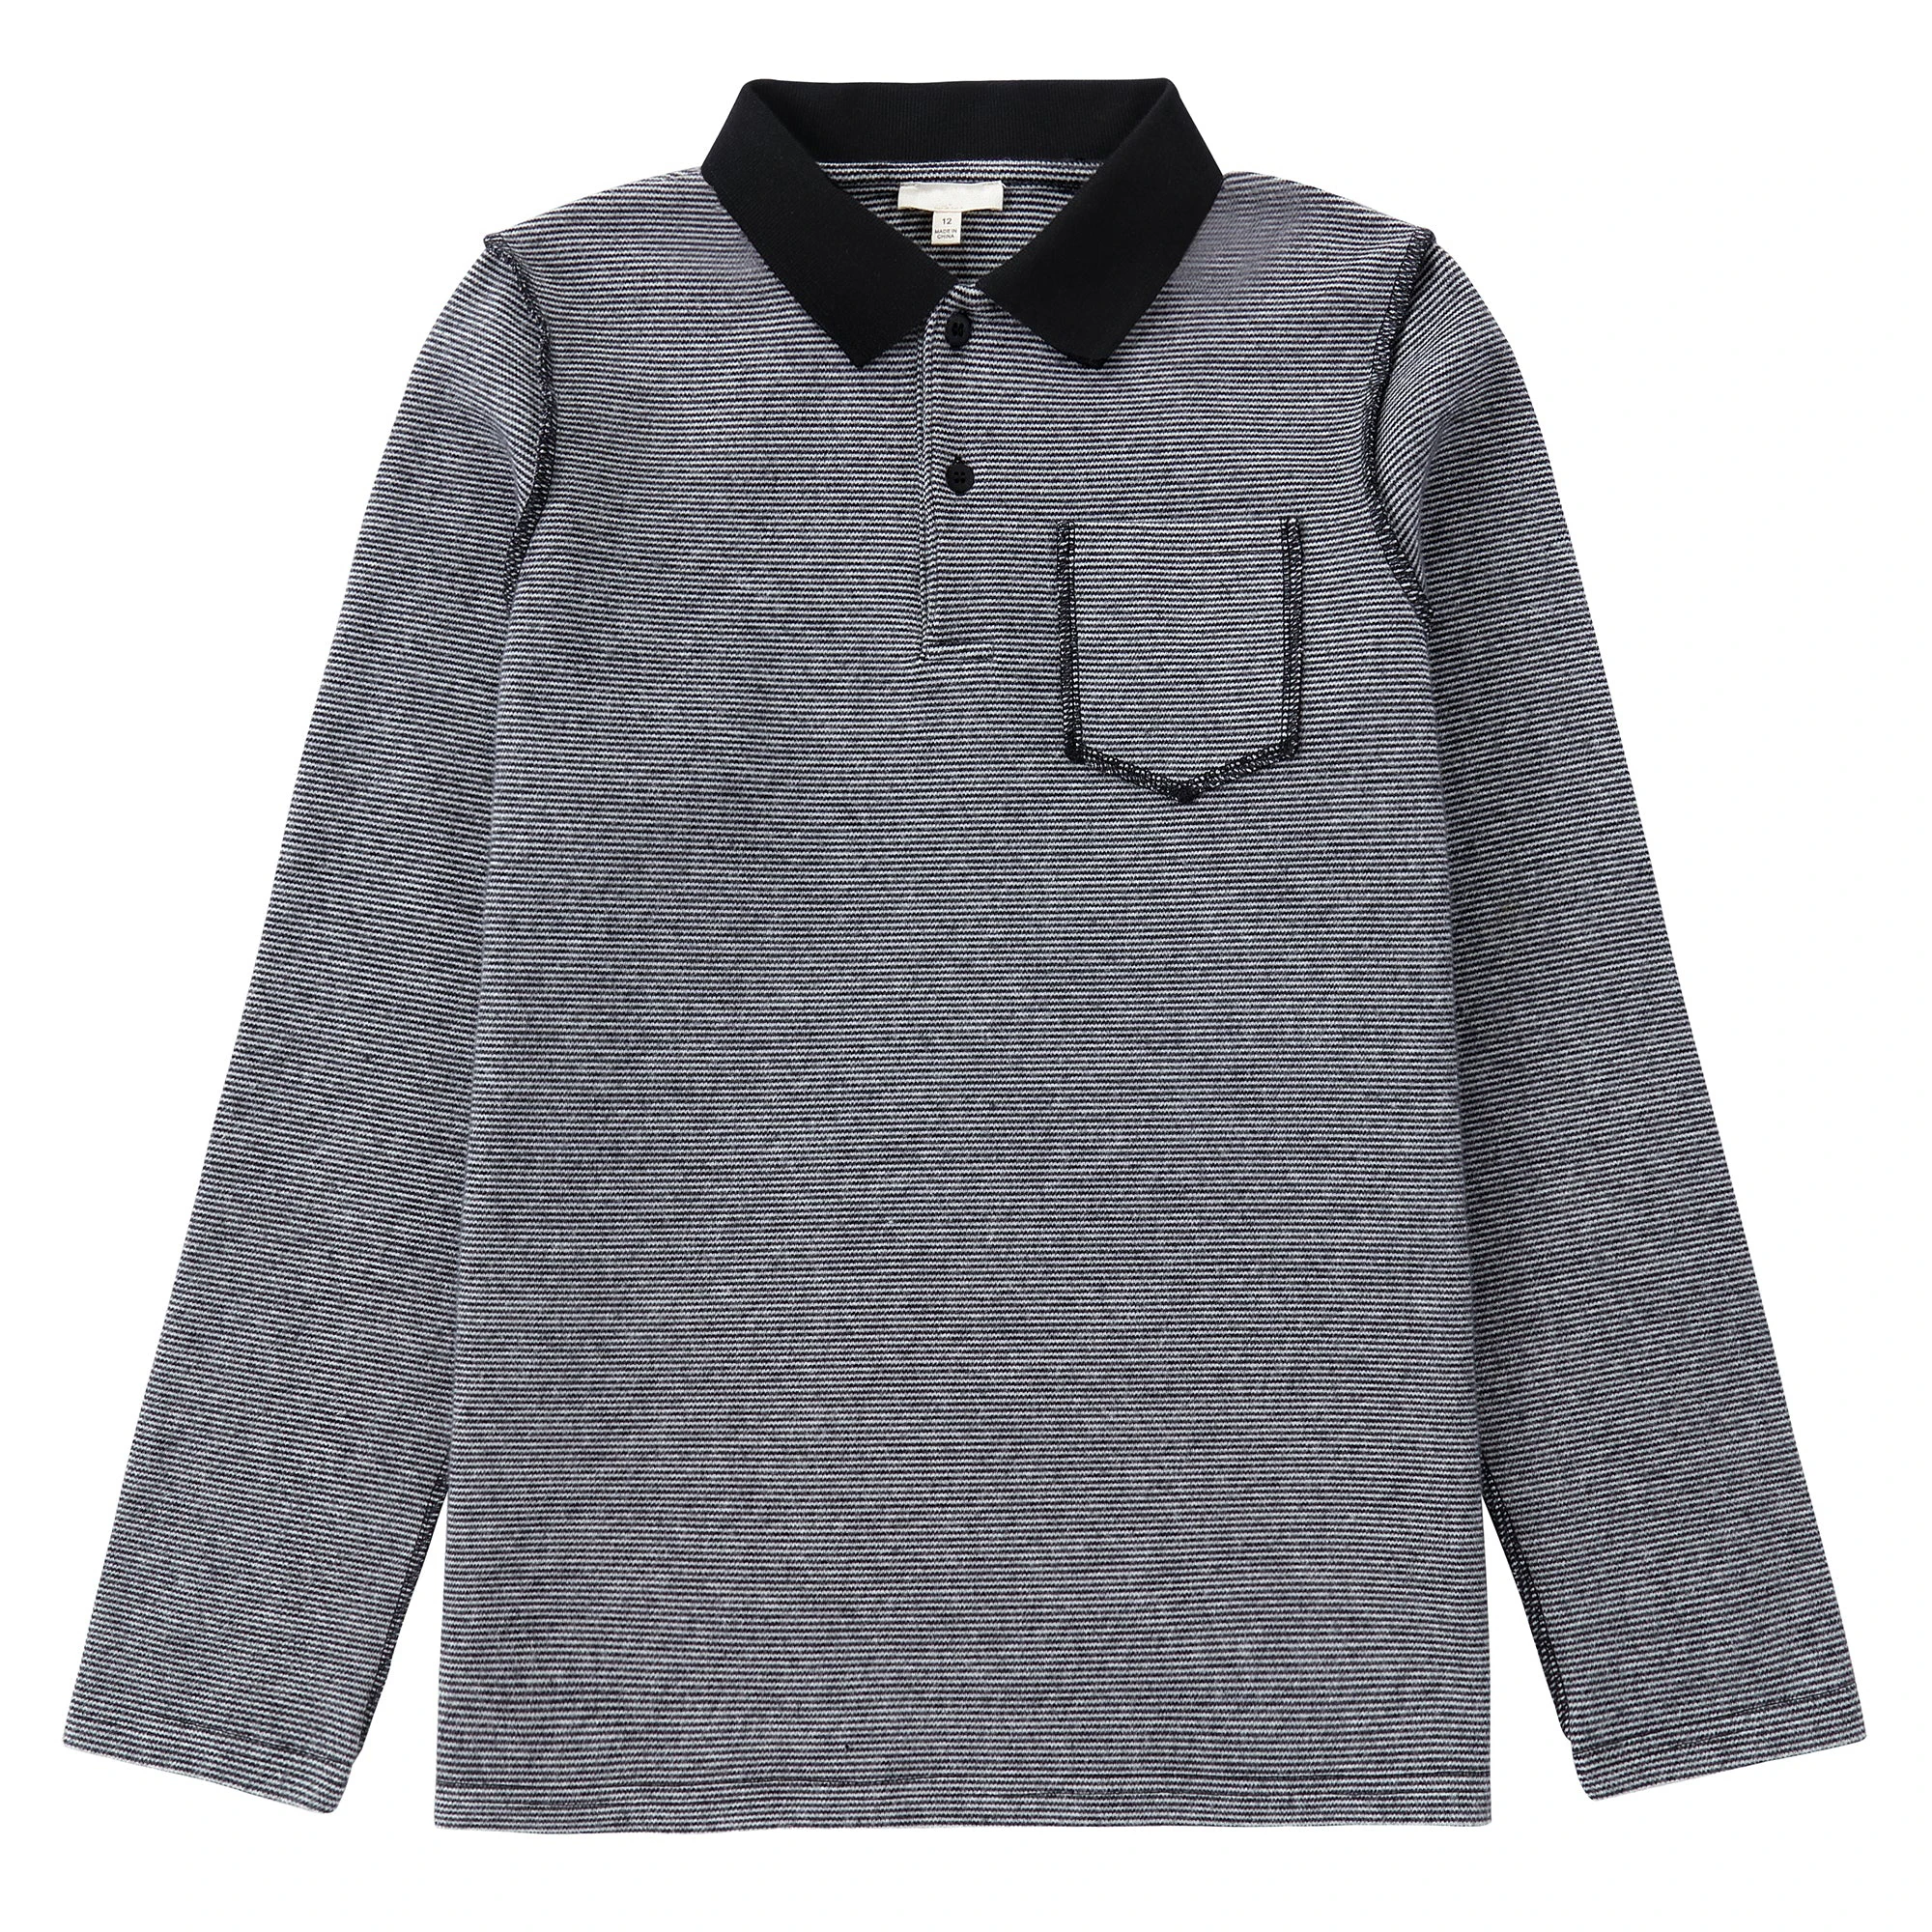 Wholesale High Quality Fashion Polo Shirt 100% Cotton Custom Logo Polo Shirt New Design Polo Shirt For Kids